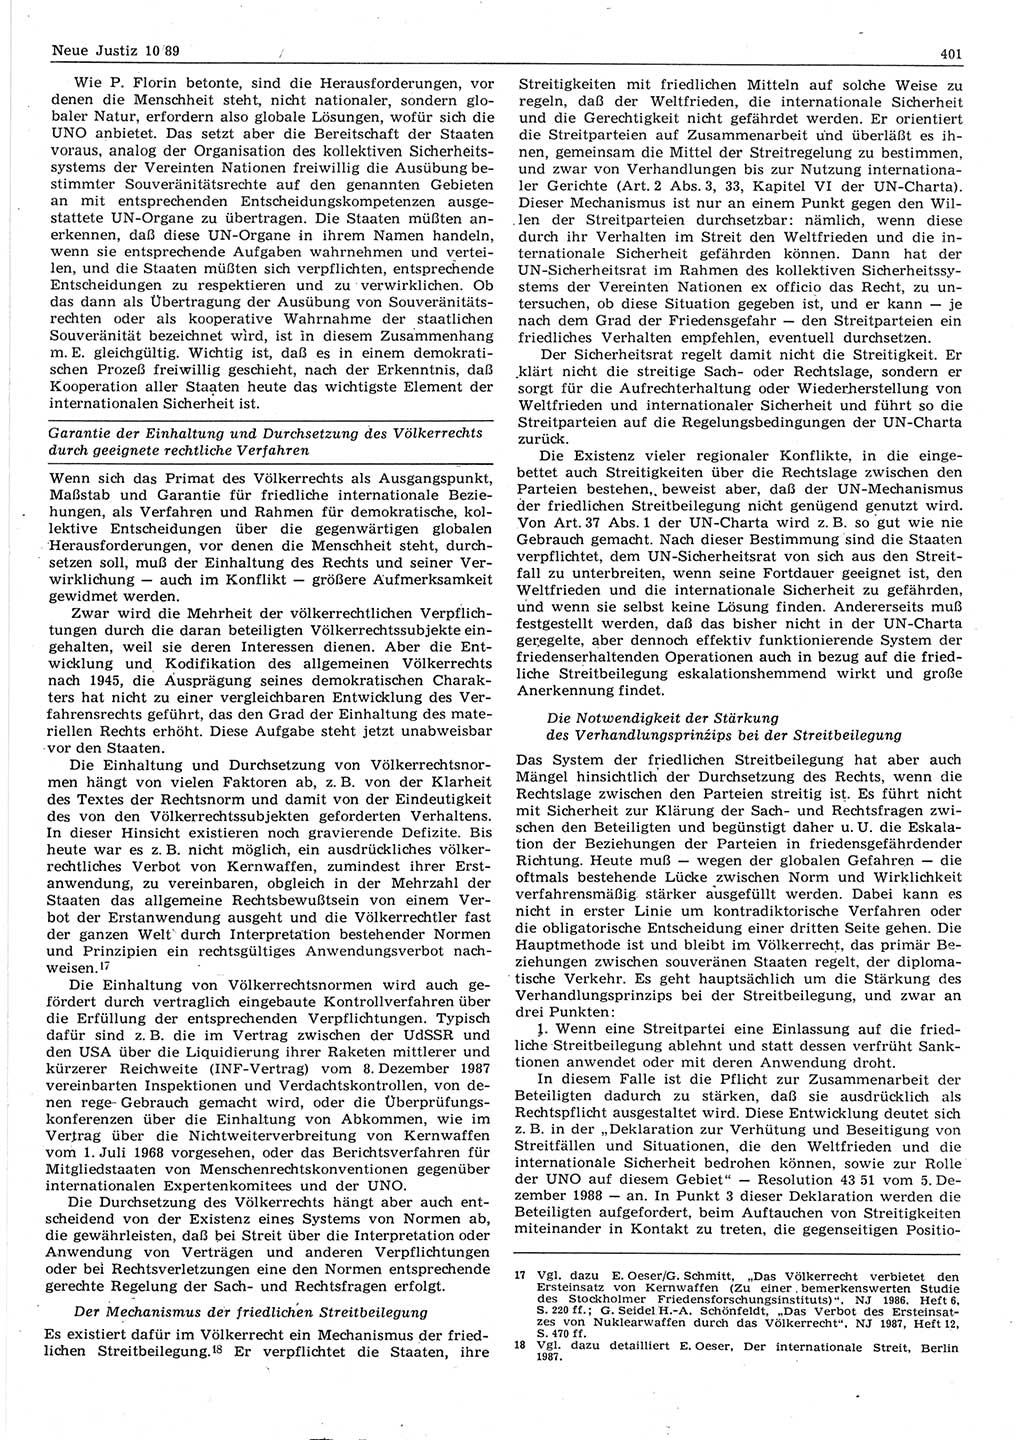 Neue Justiz (NJ), Zeitschrift für sozialistisches Recht und Gesetzlichkeit [Deutsche Demokratische Republik (DDR)], 43. Jahrgang 1989, Seite 401 (NJ DDR 1989, S. 401)